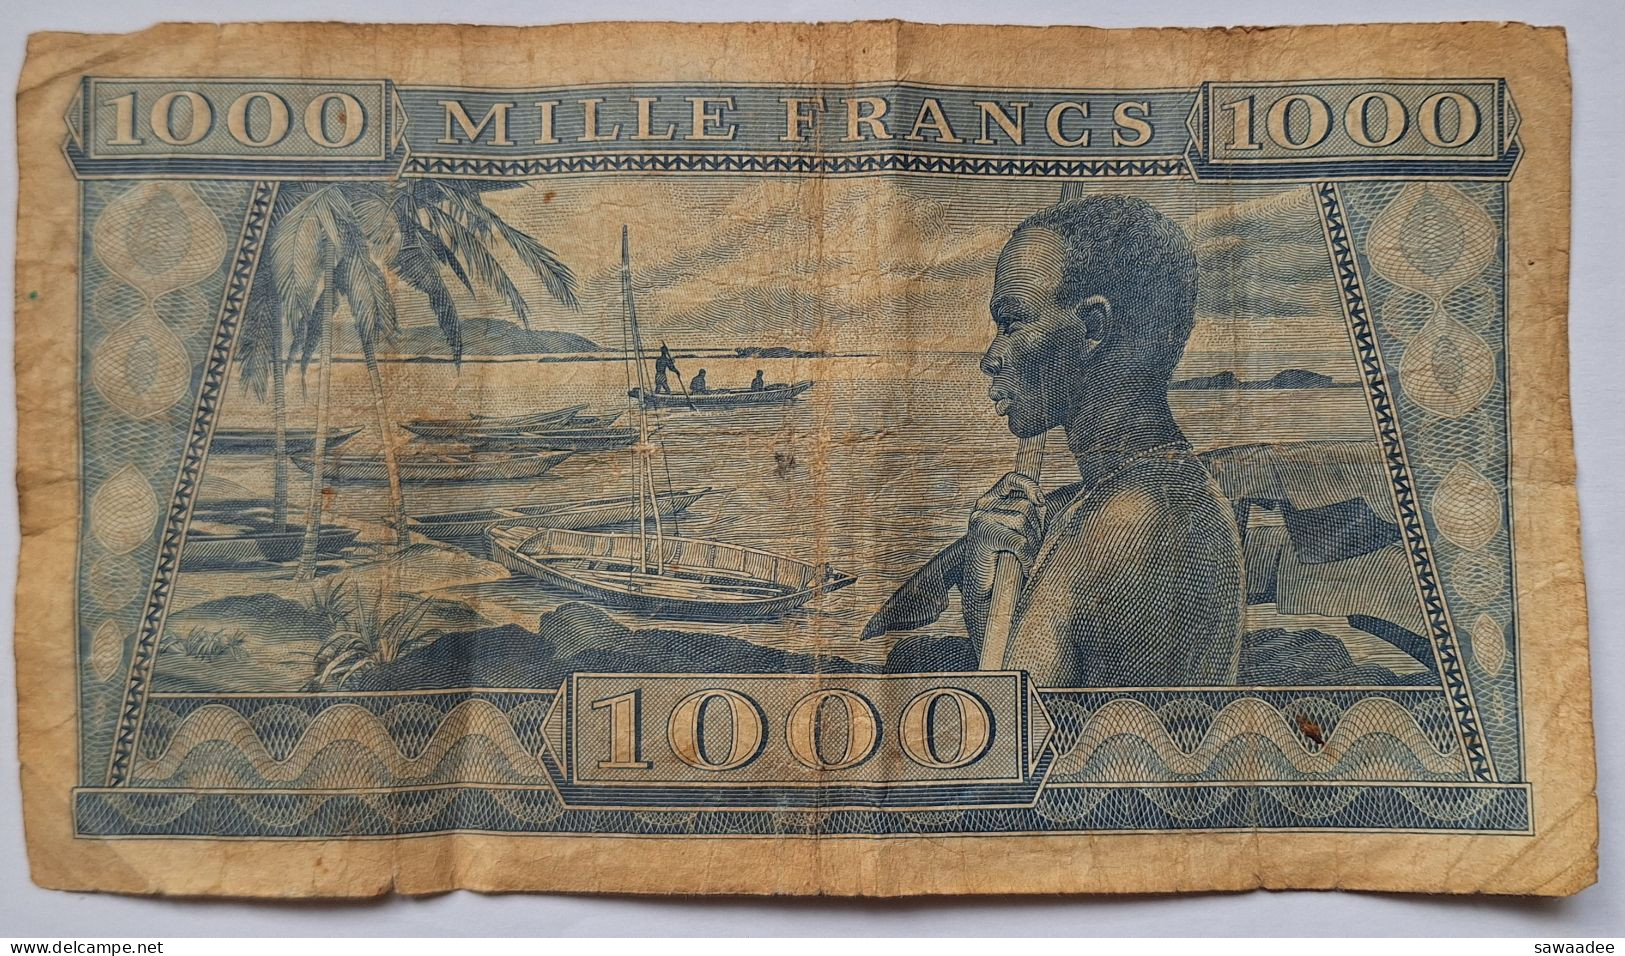 BILLET GUINEE - P.9 - 1000 FRANCS - 02/10/1958 - PORTRAIT HOMME - BORD DE MER - PIROGUES - HOMME - Guinée